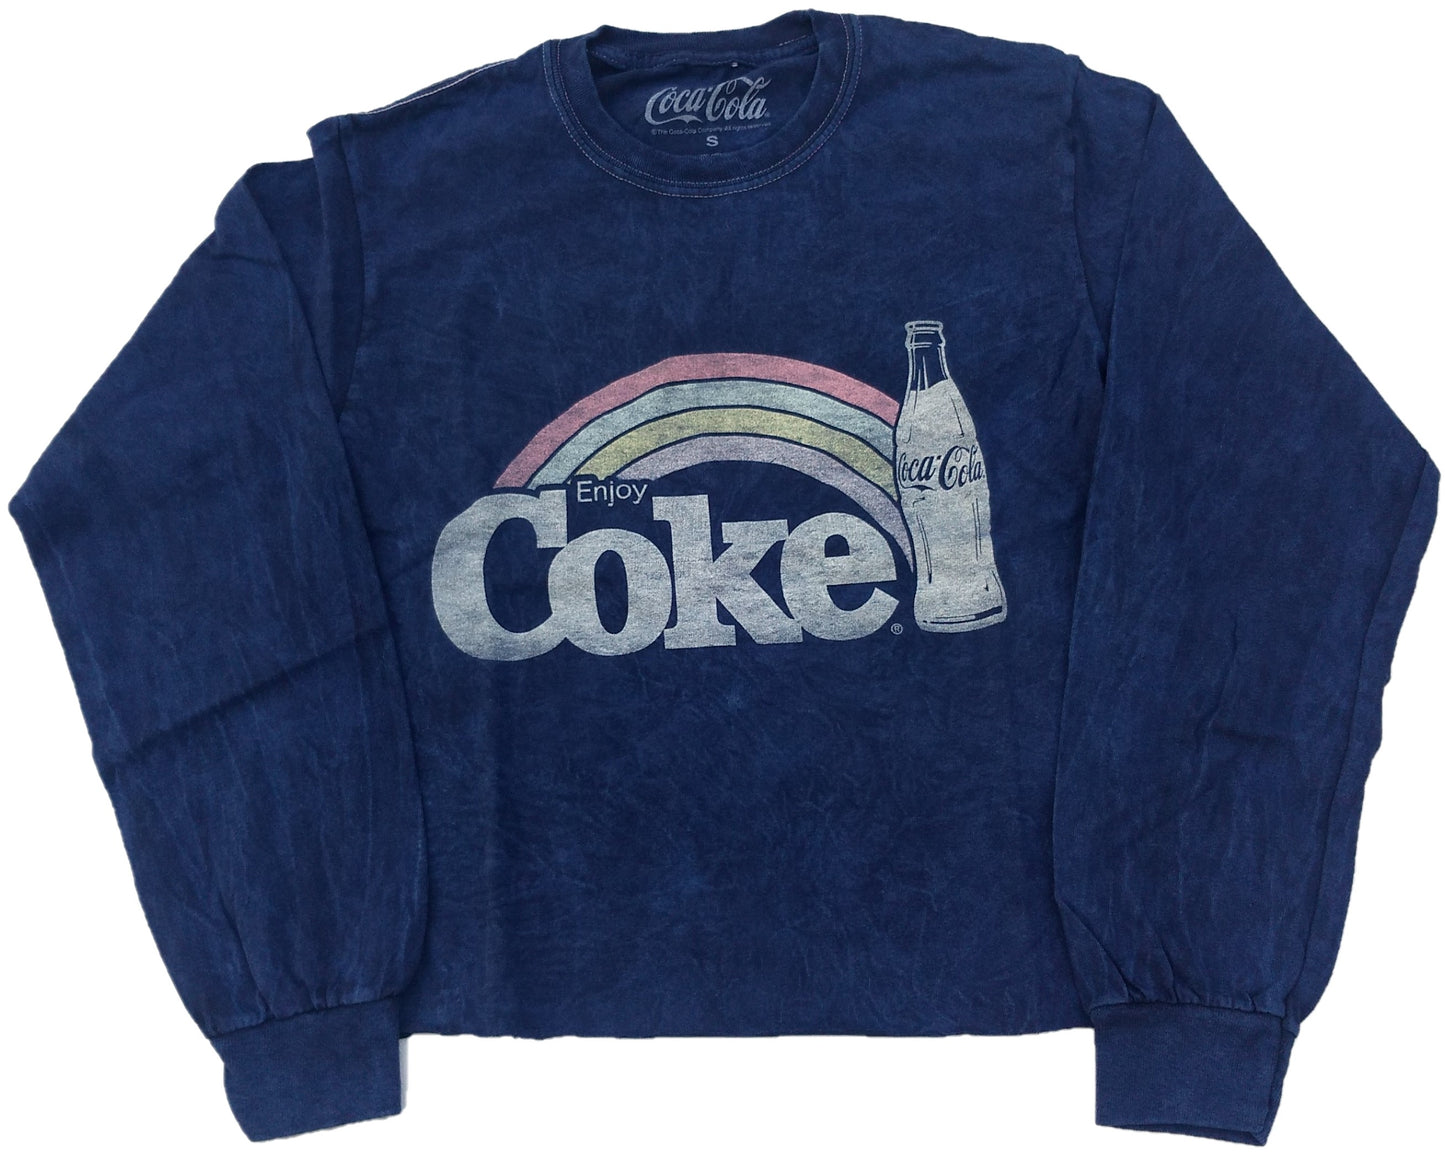 Enjoy Coke Coca-Cola Crop Top Juniors Womens T-Shirt